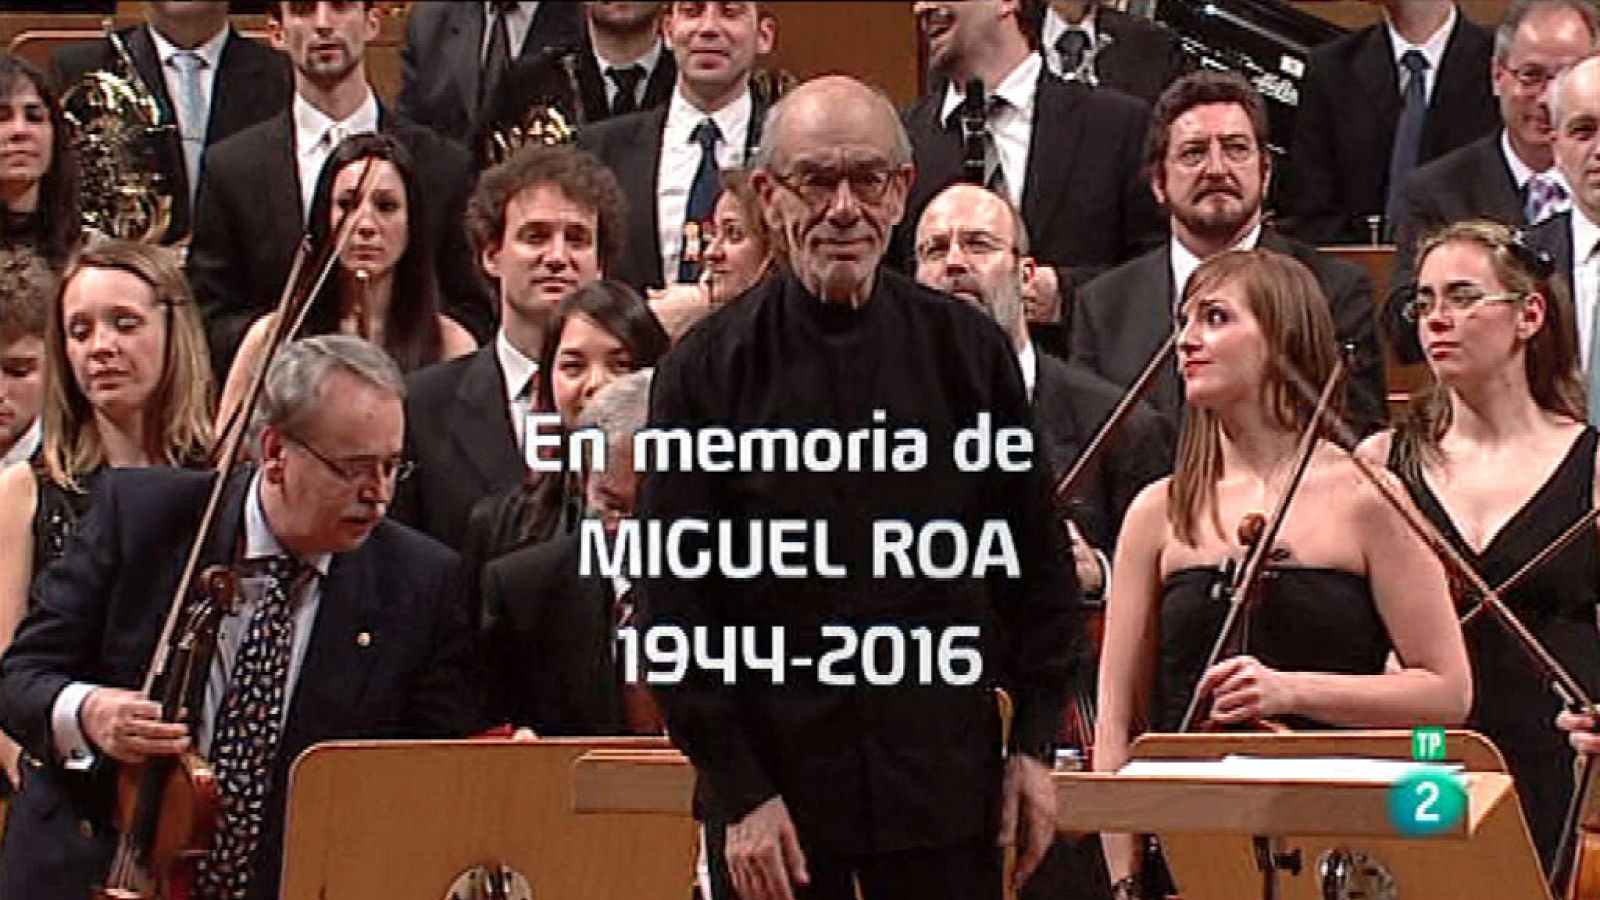 Los conciertos de La 2 - En memoria de Miguel Roa